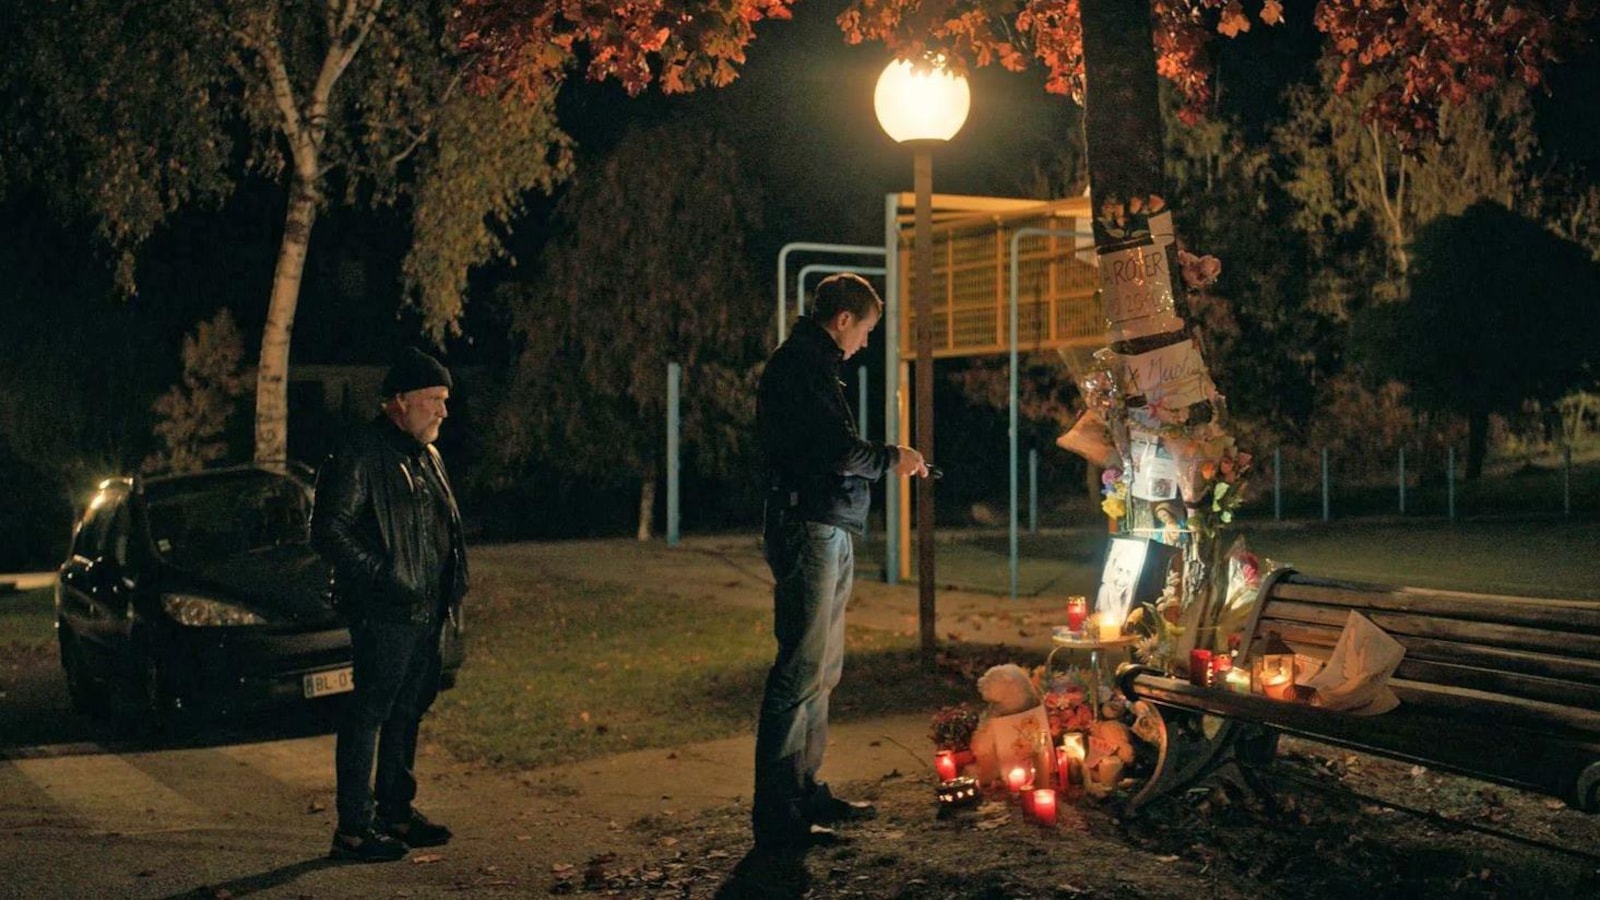 La nuit, deux hommes se recueillent devant un autel spontané près d'un banc de parc.